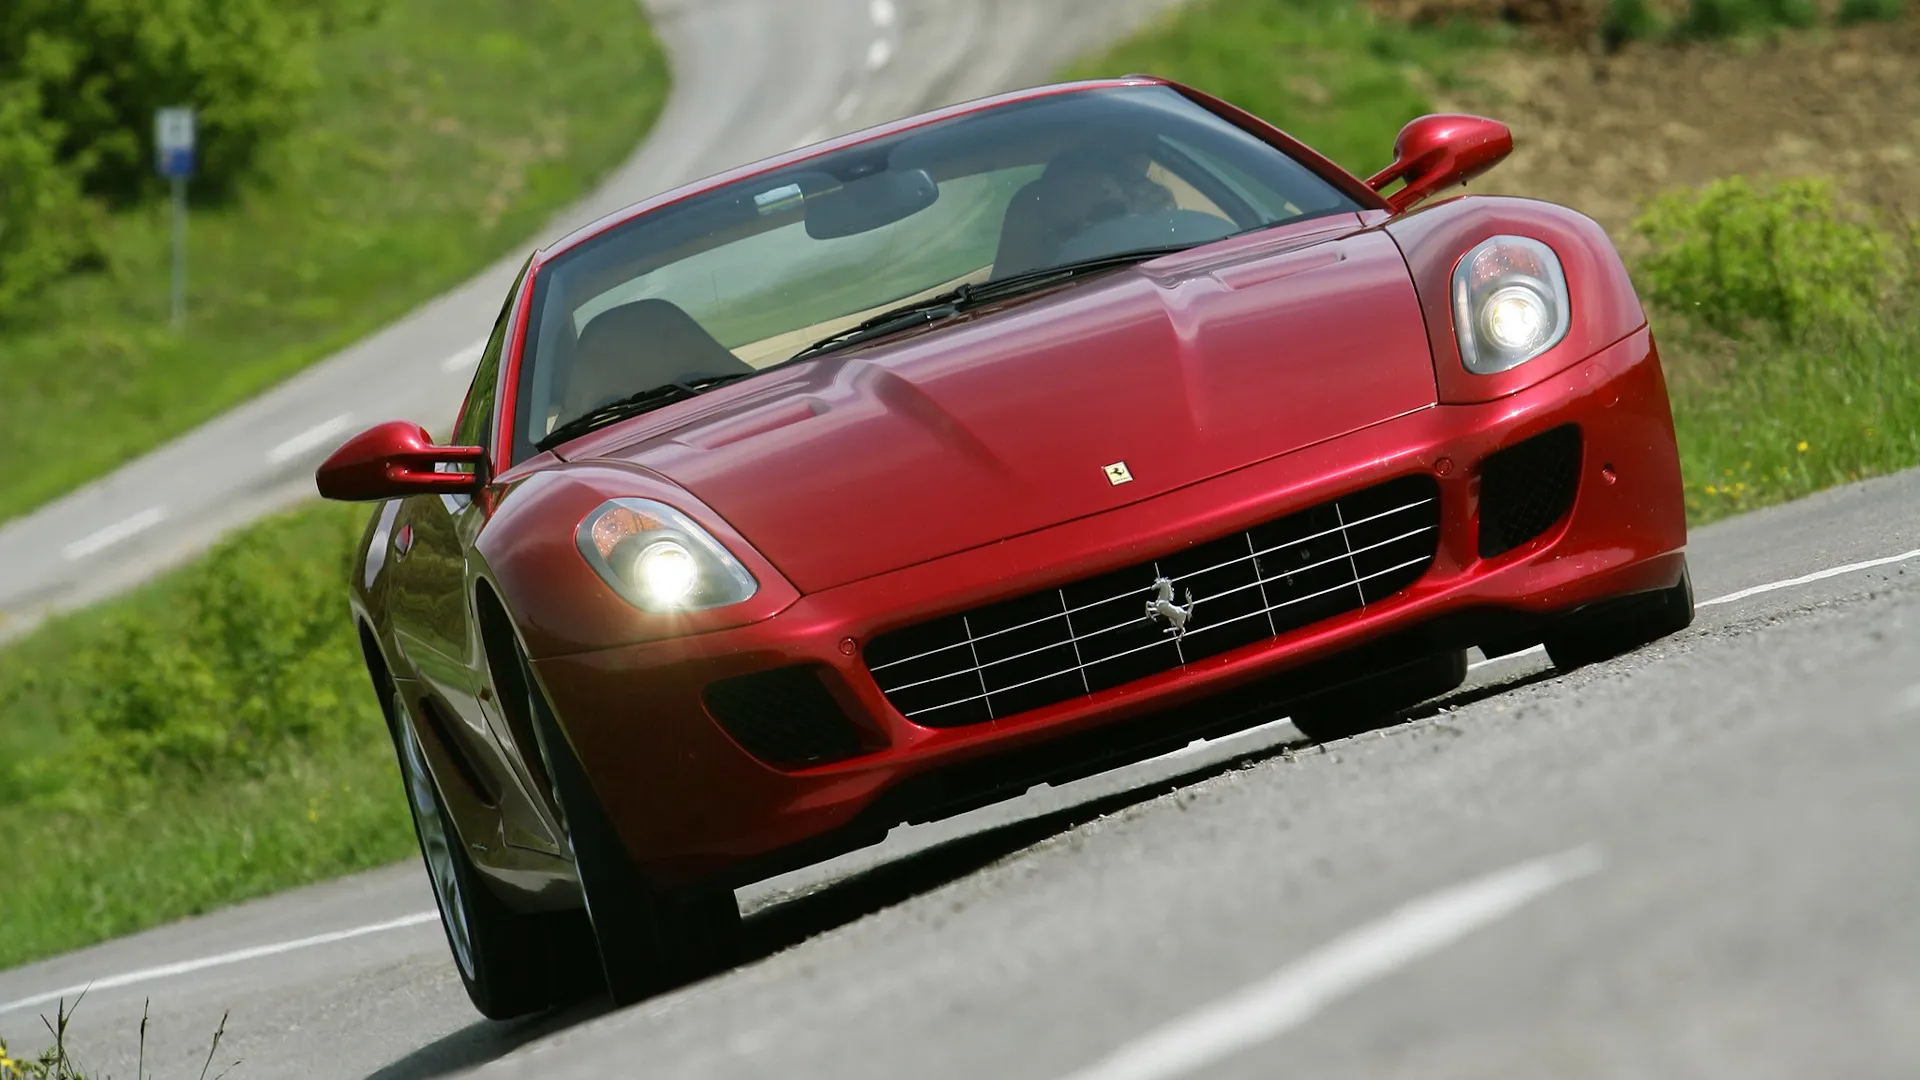 Coche del día: Ferrari 599 GTB Fiorano